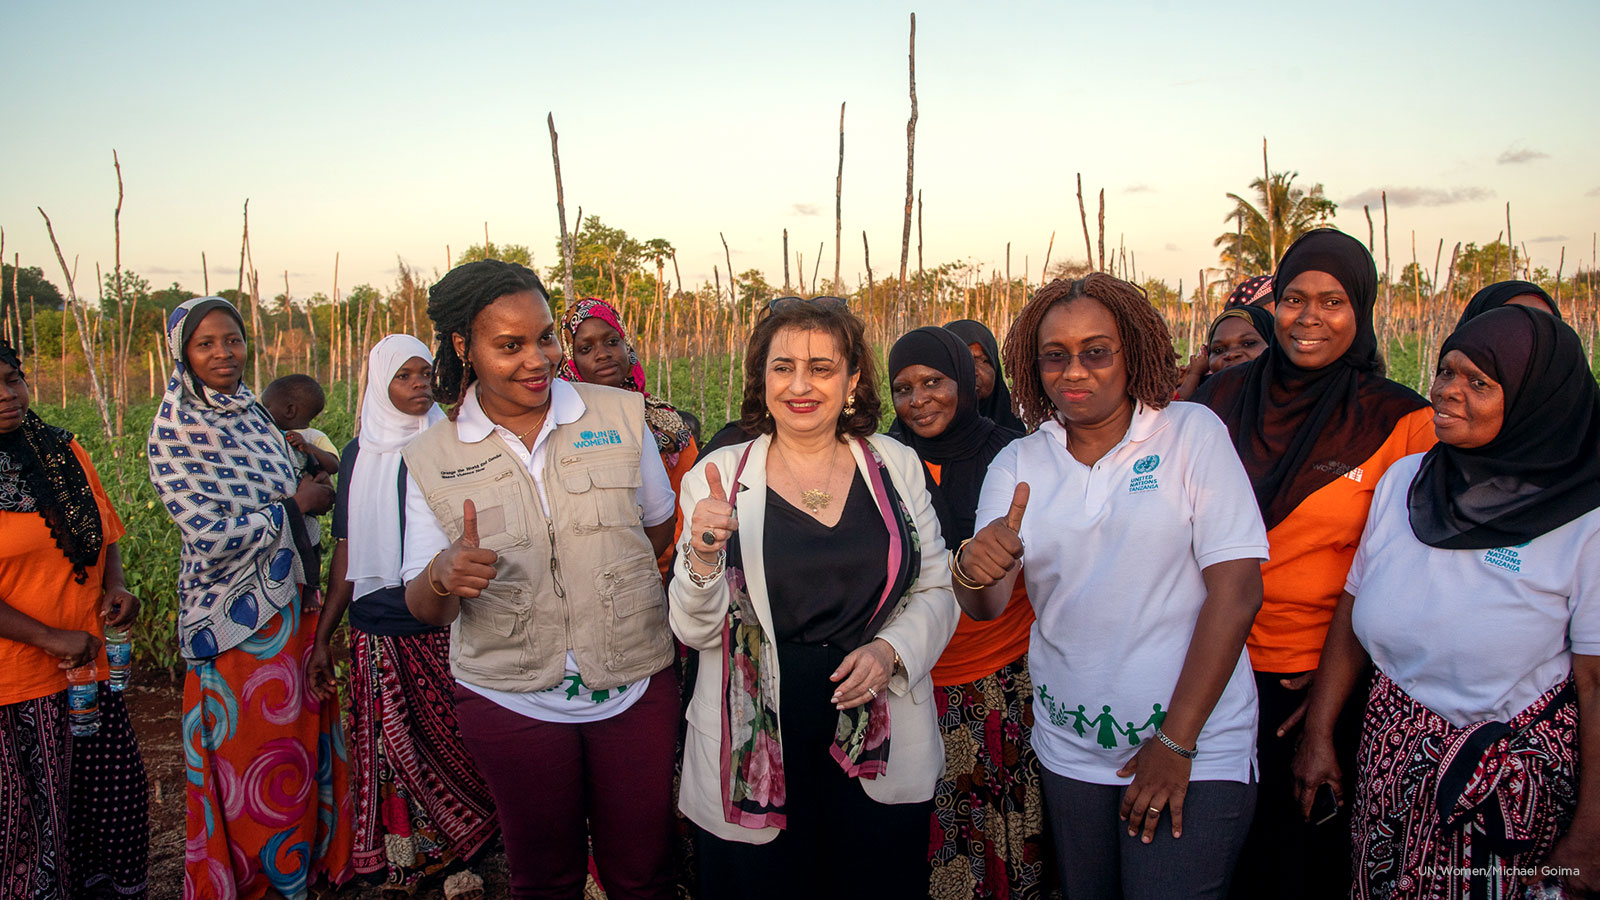 With women horticulture farmers in Zanzibar. Photo: UN Women/Michael Goima. 